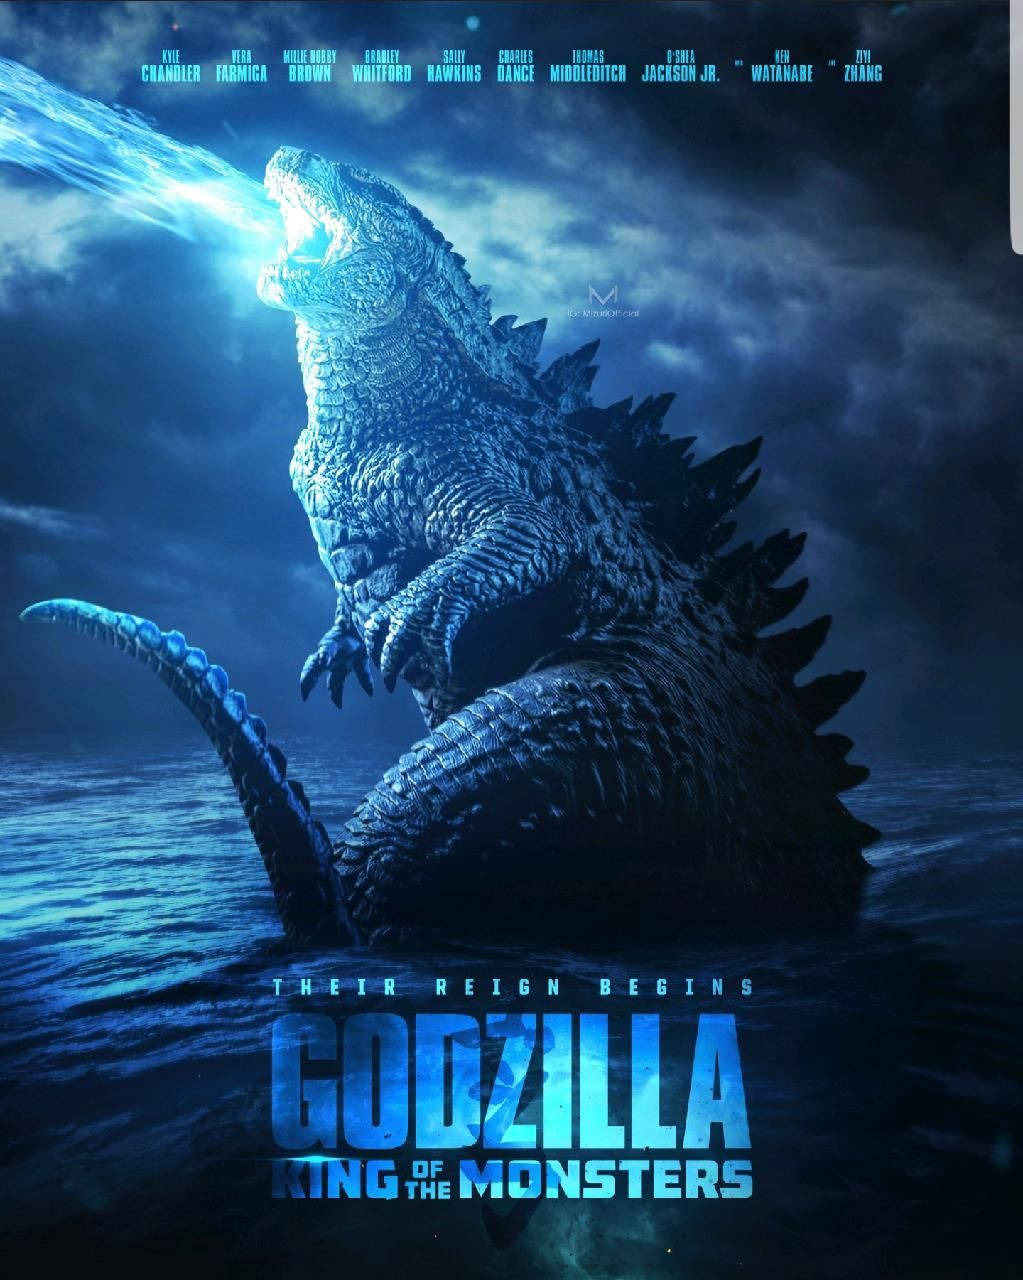 "Prepare For The Reign Of Godzilla" Wallpaper